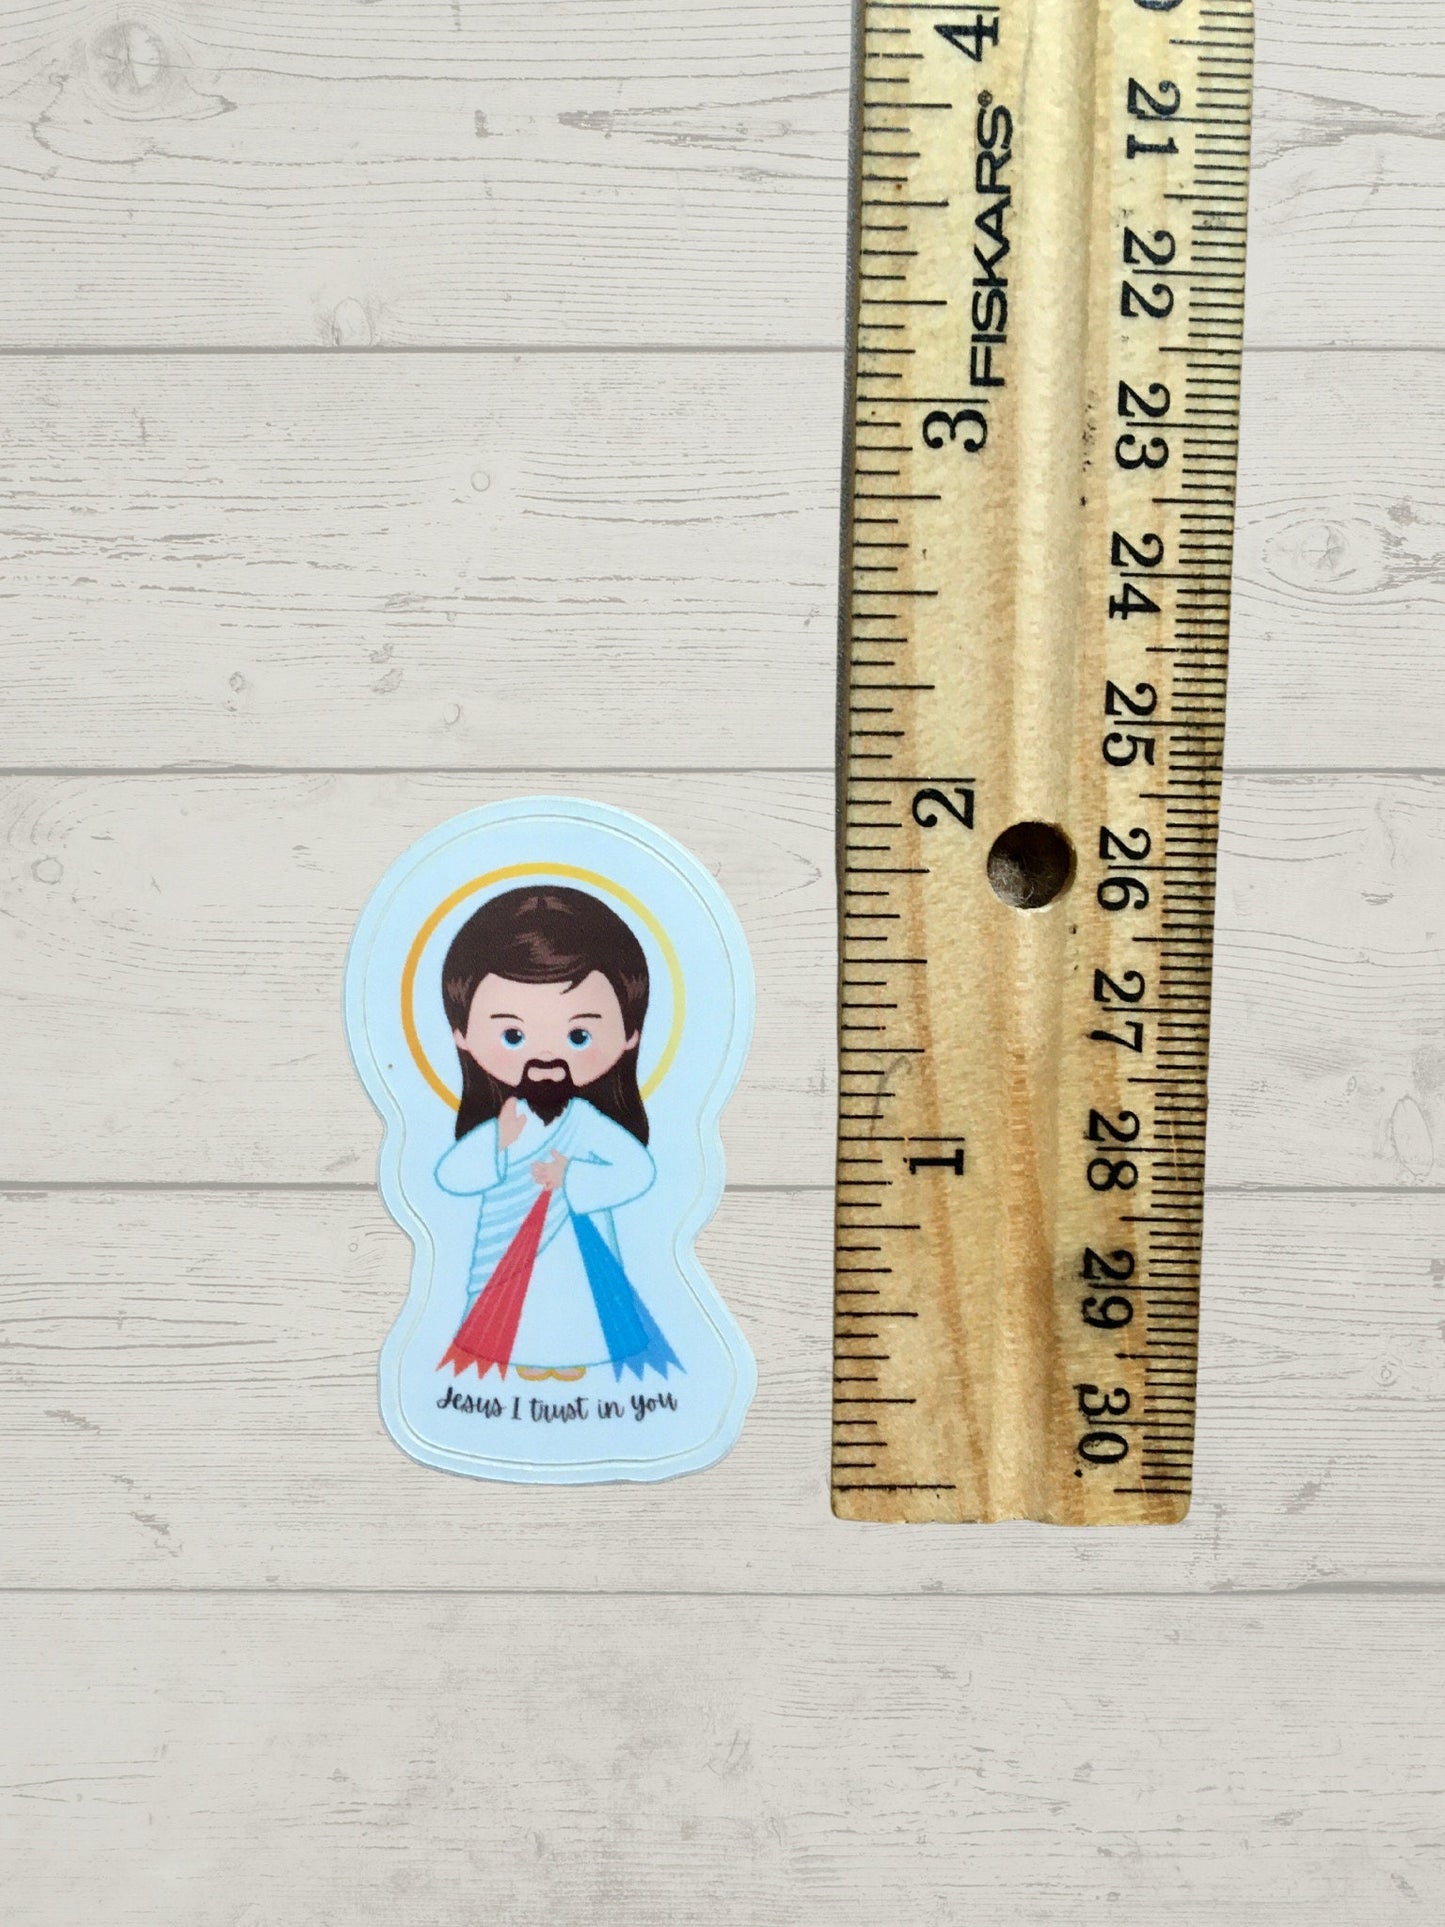 Sticker next to a ruler